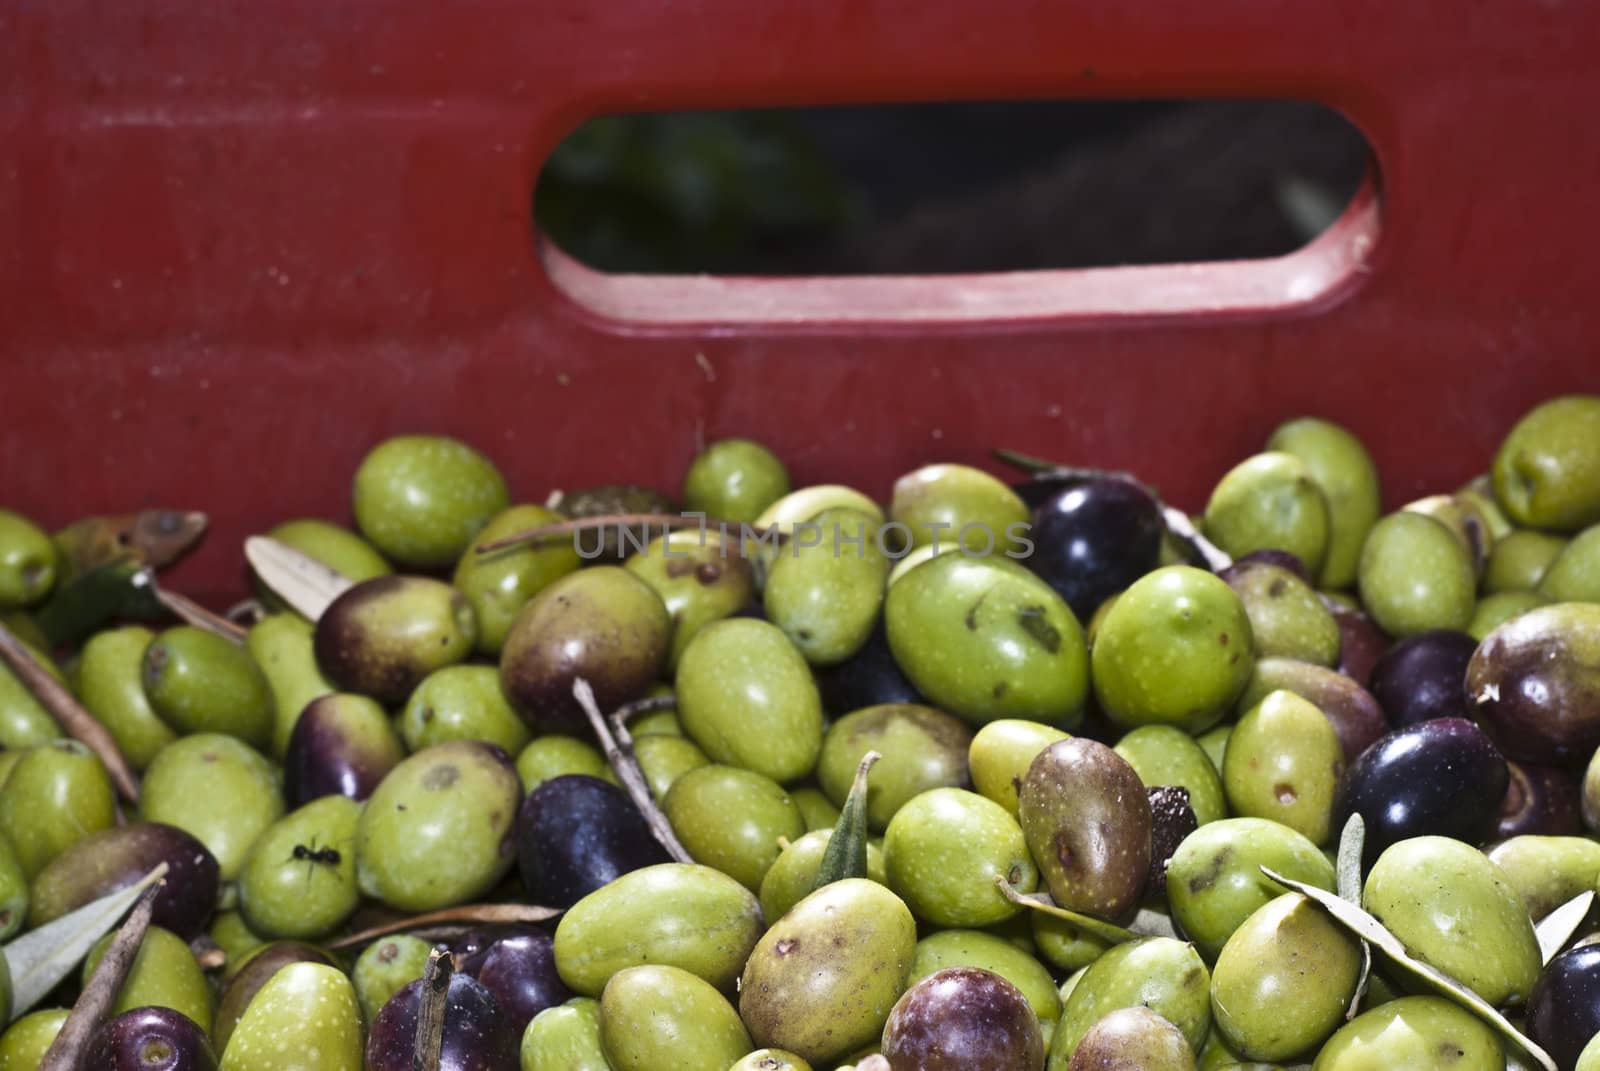 Olives in the box. by gandolfocannatella